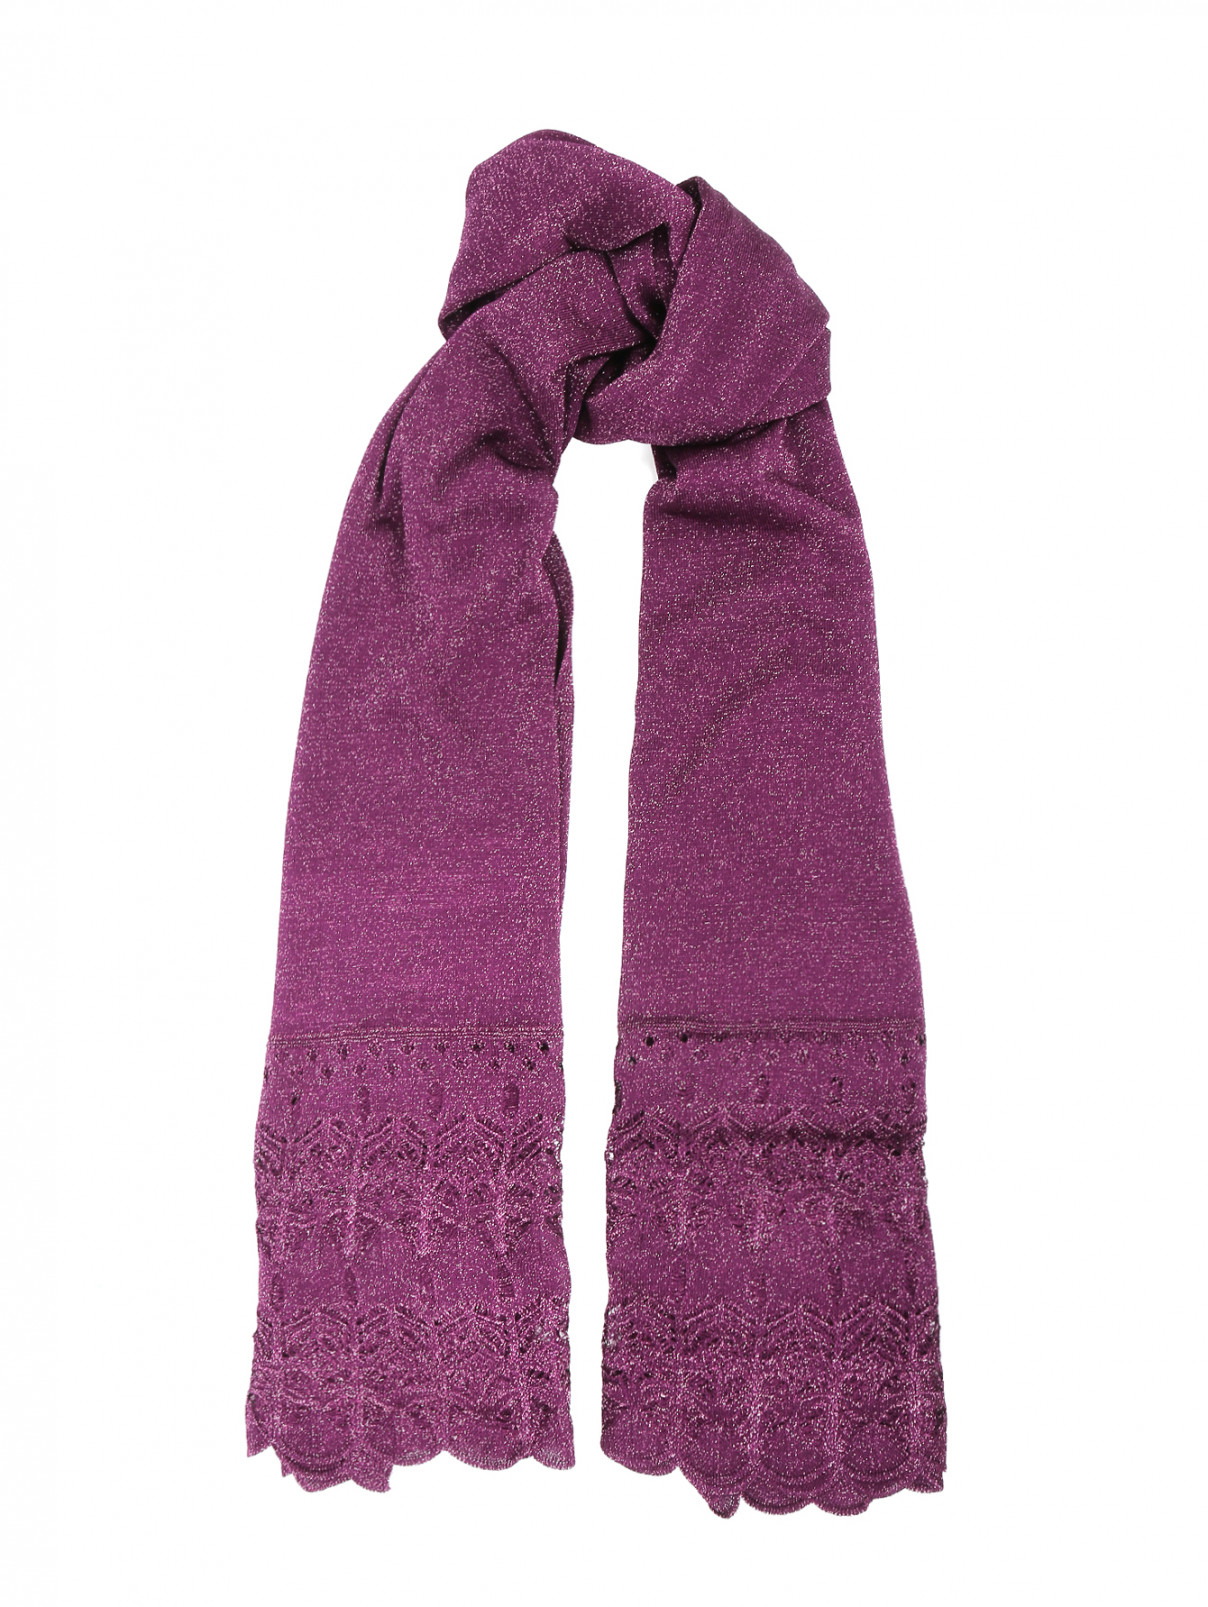 Шарф с люрексом Etro  –  Общий вид  – Цвет:  Фиолетовый